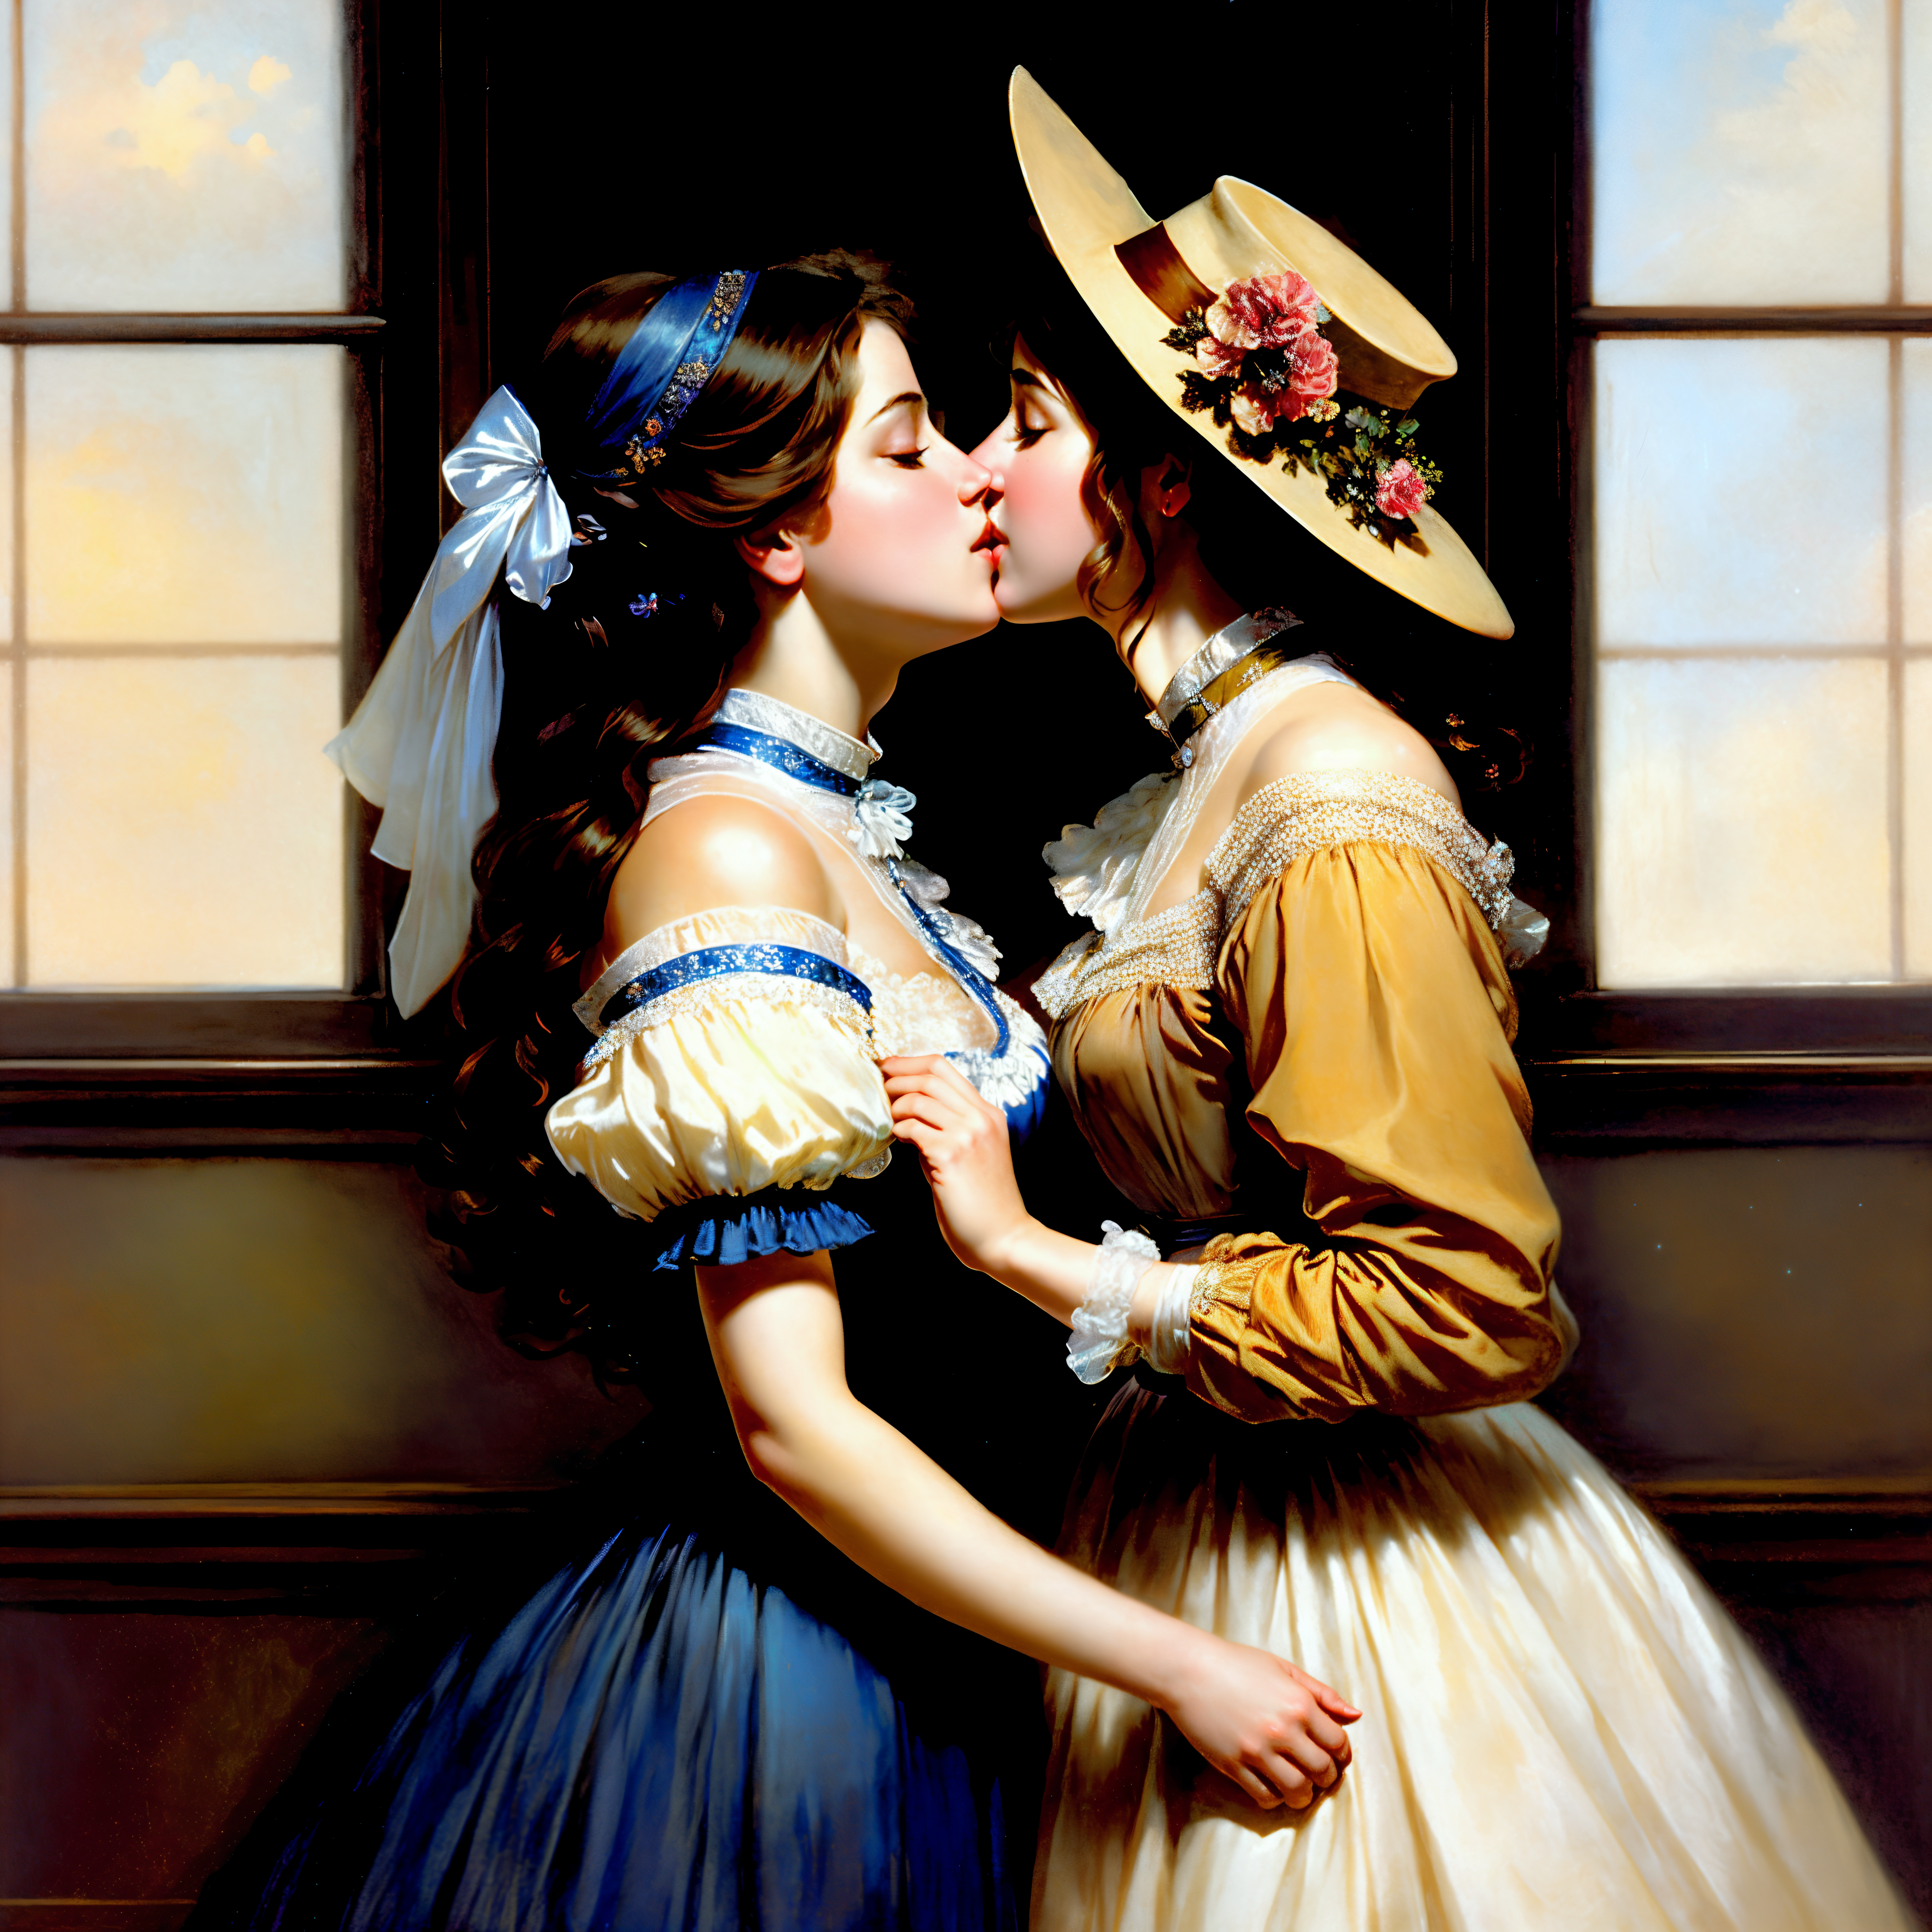 General 4096x4096 AI art two women kissing